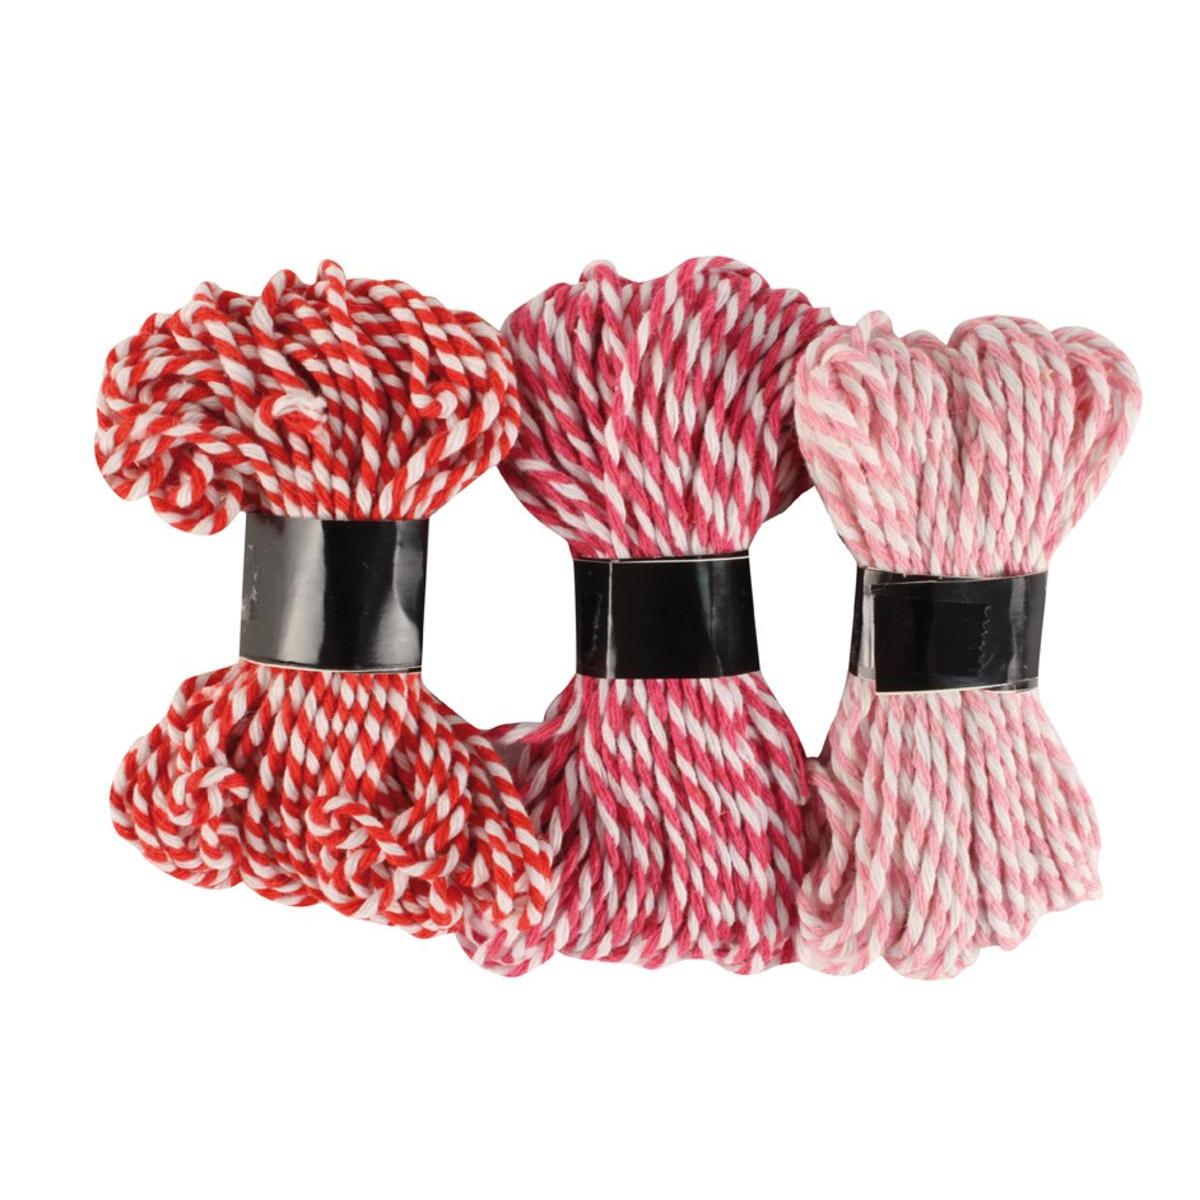 3 ficelles bicolore - Coton - 10 m - Rouge et rose